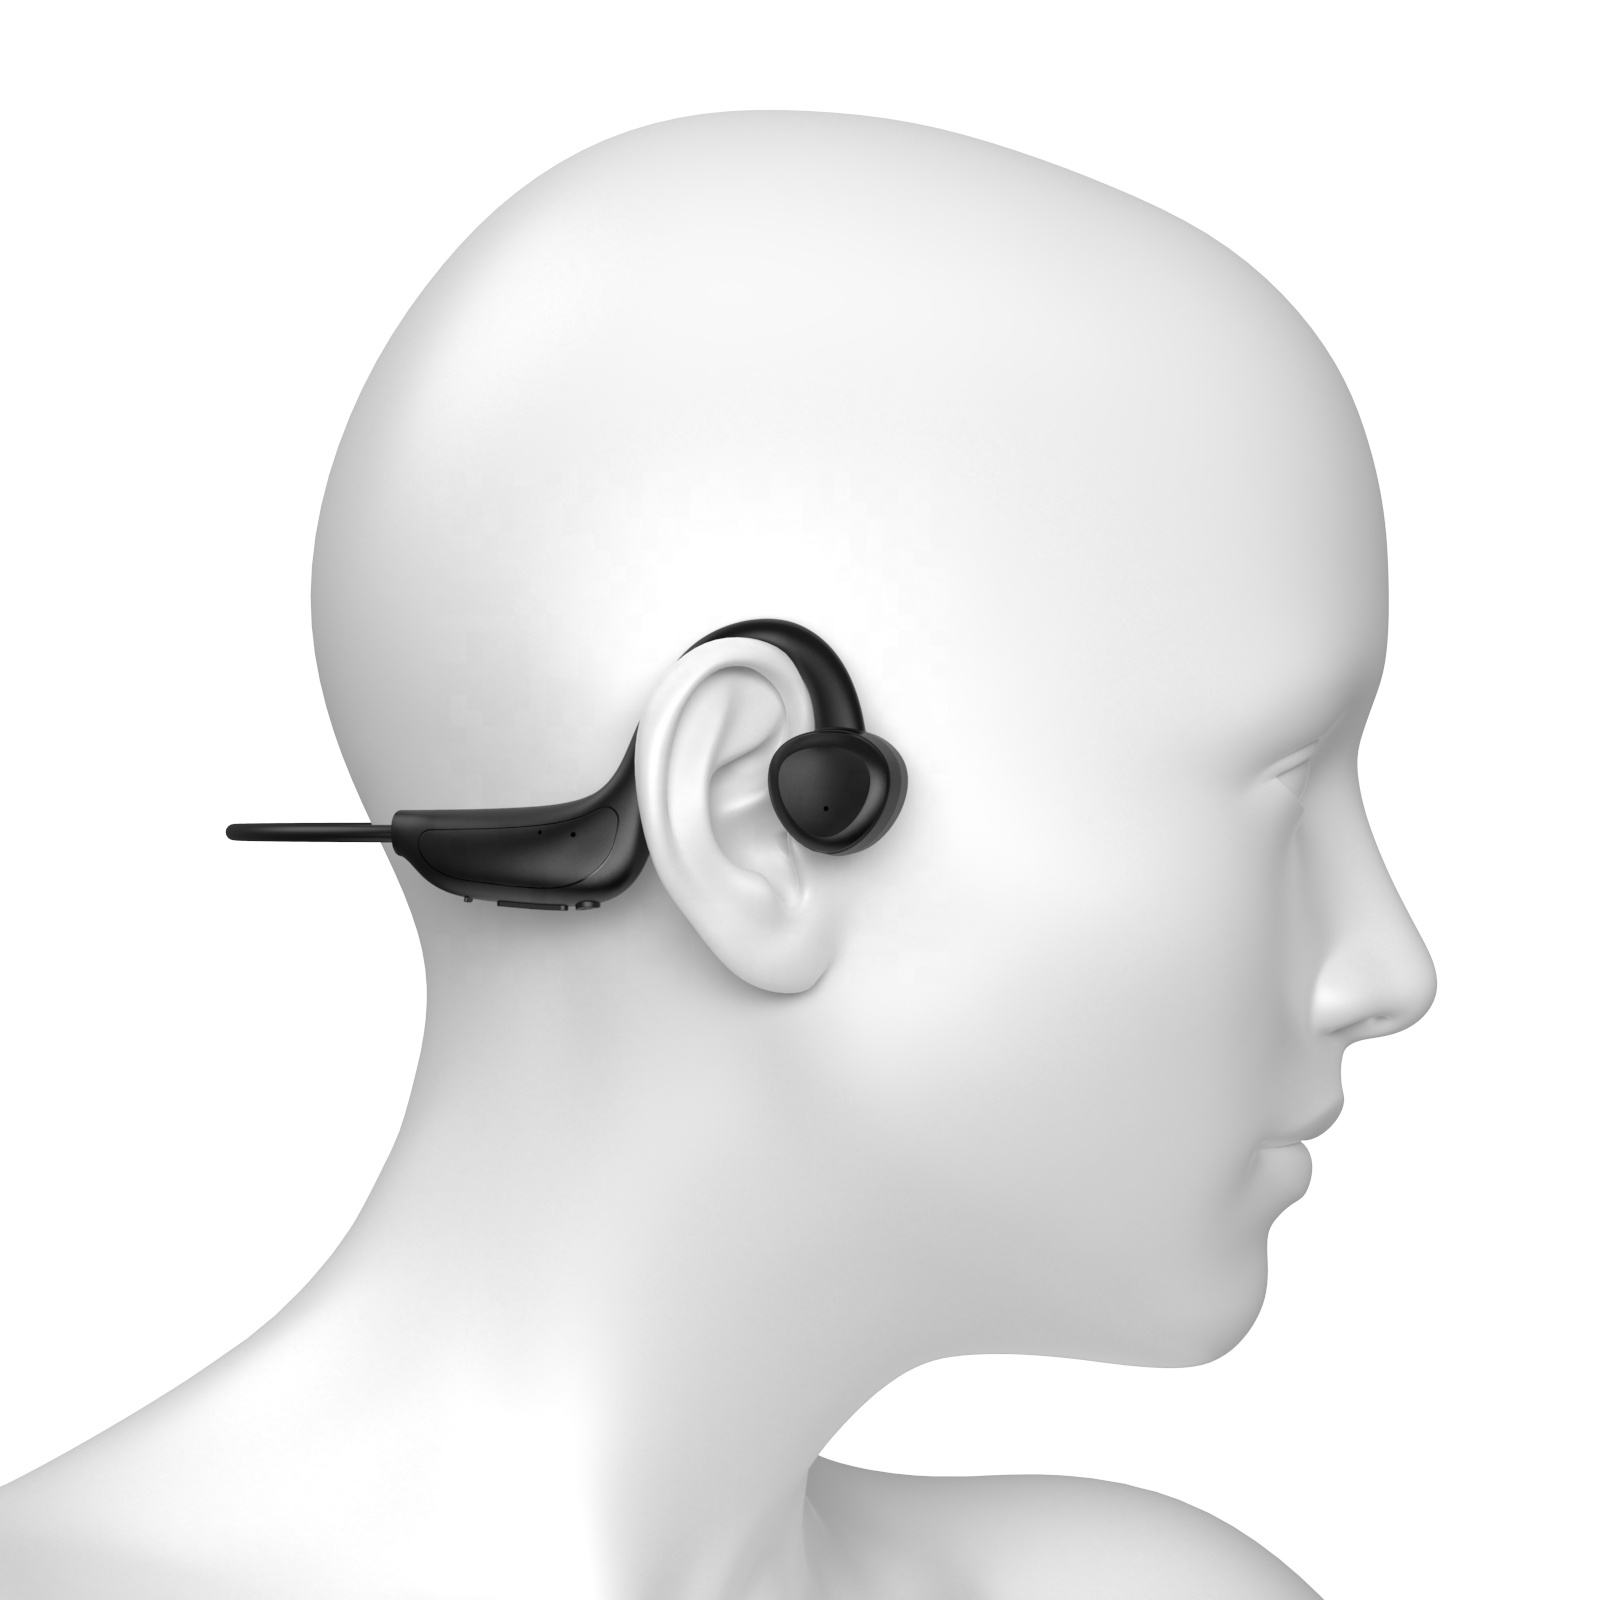 INF Gehörschutz, Luftleitungs-Funkkopfhörer, In-ear schwarz Kopfhörer, offener Kopfhörer